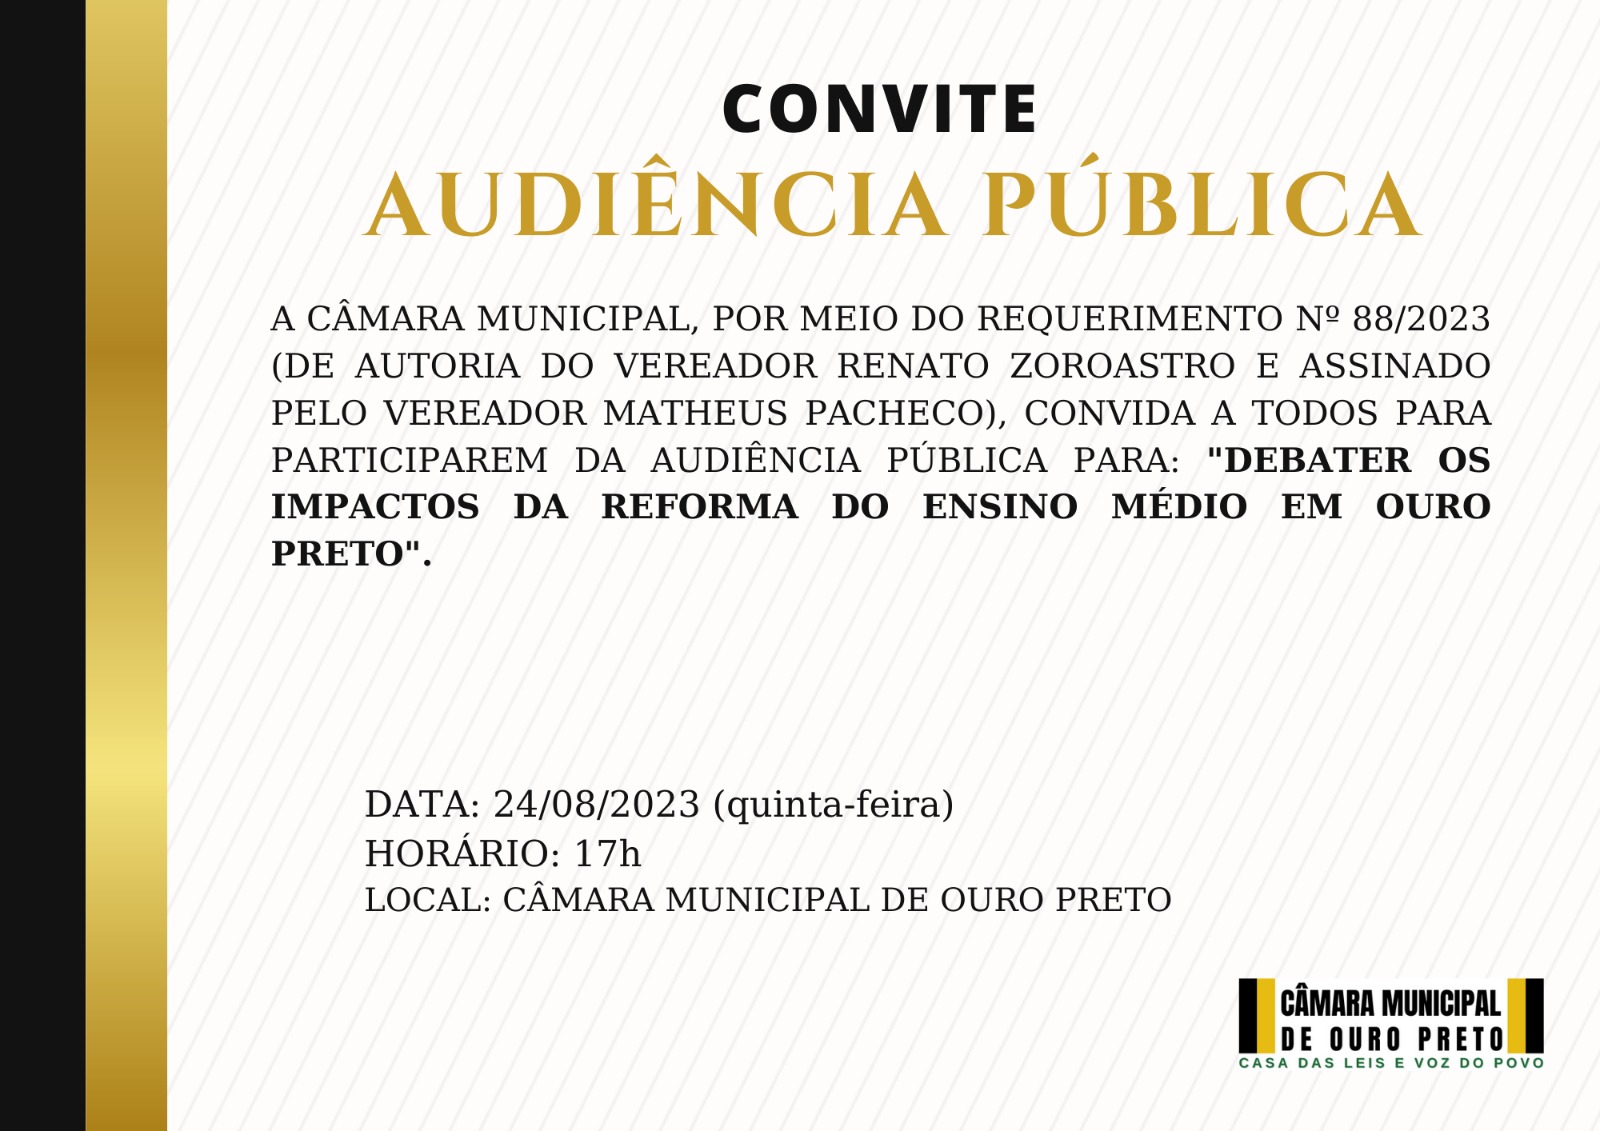 Câmara Municipal de Ouro Preto - Audiência Pública: 